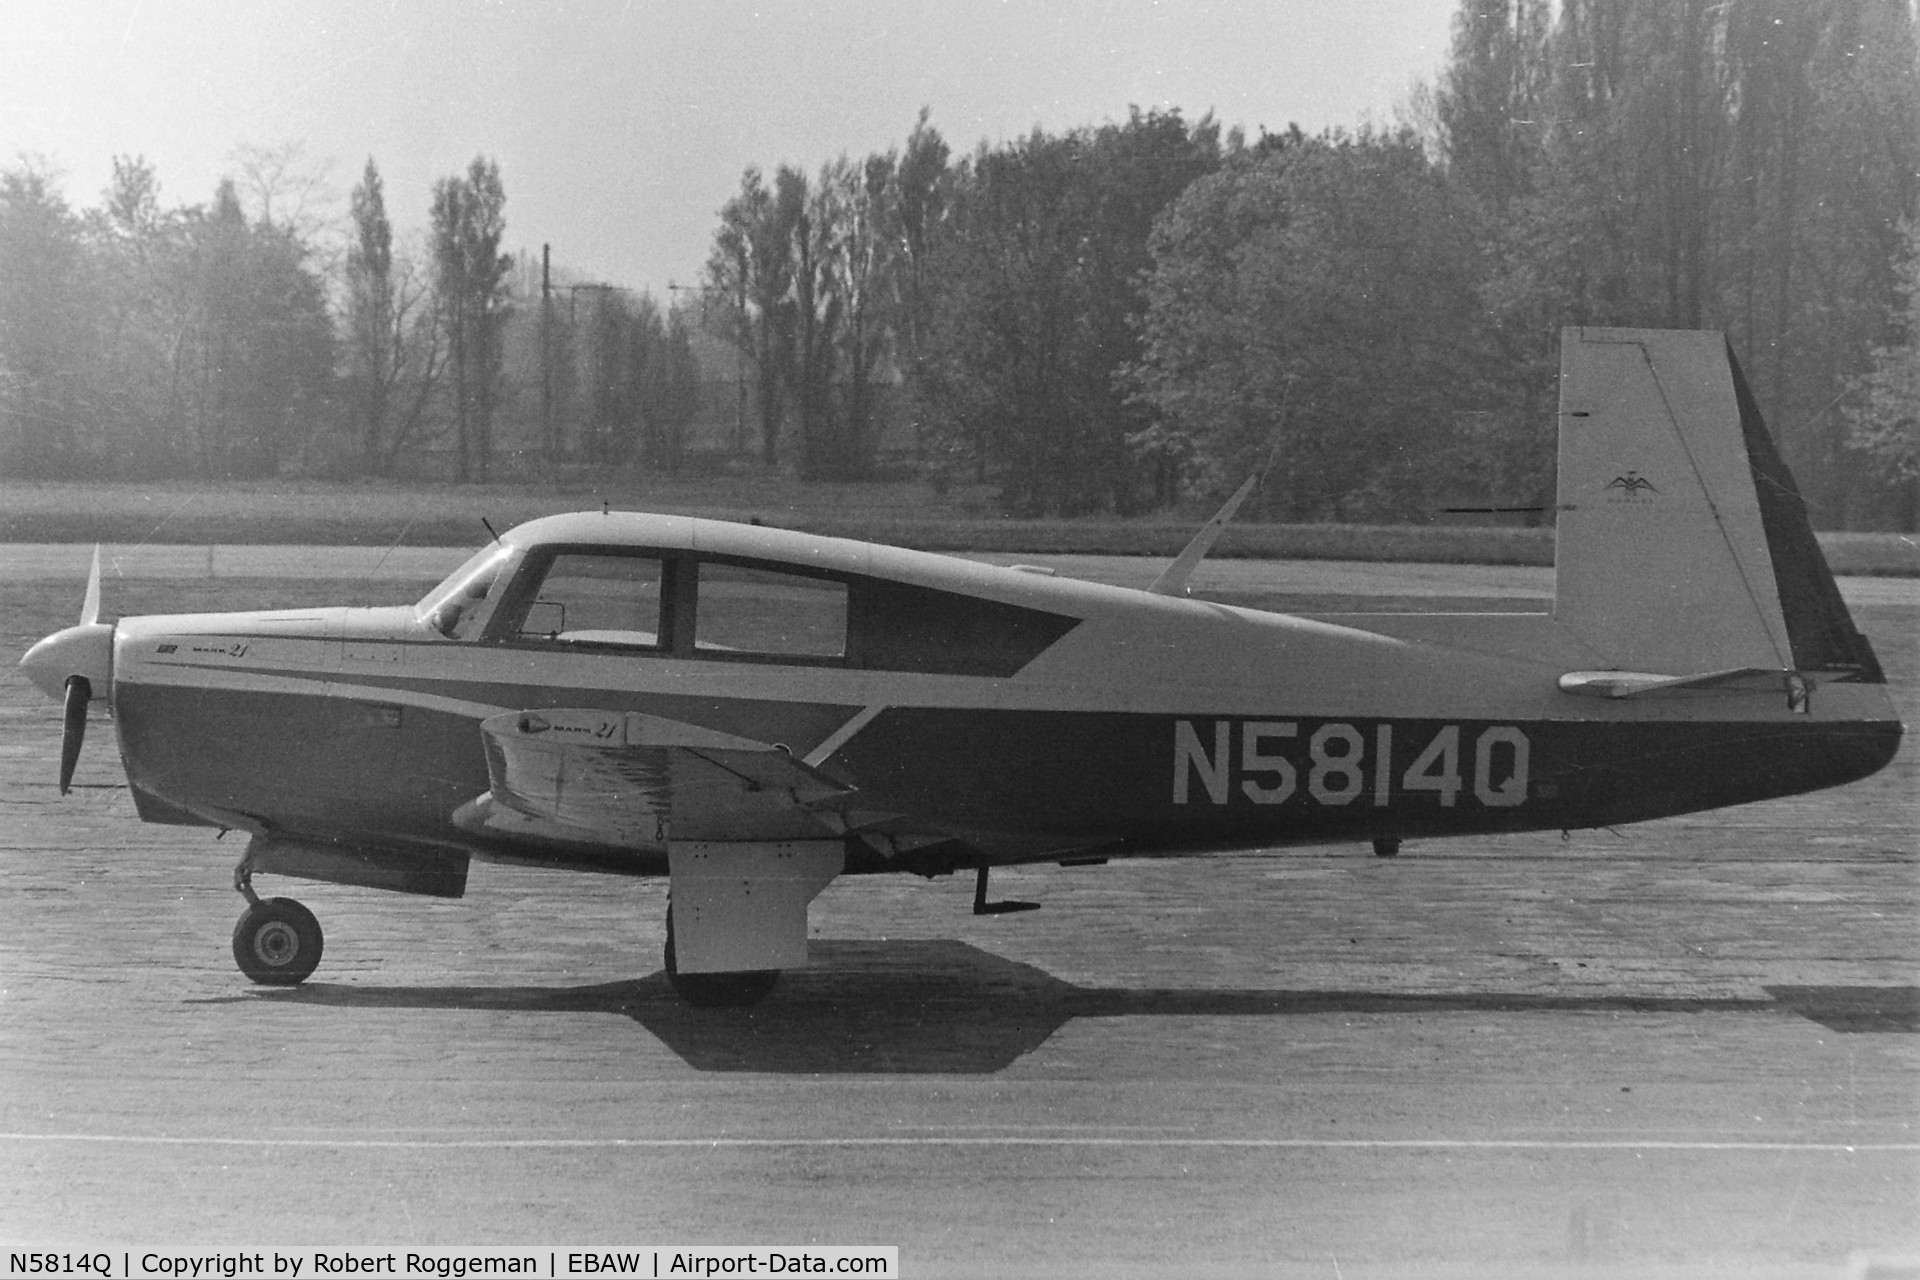 N5814Q, 1965 Mooney M20C Ranger C/N 3116, MID 1960's.